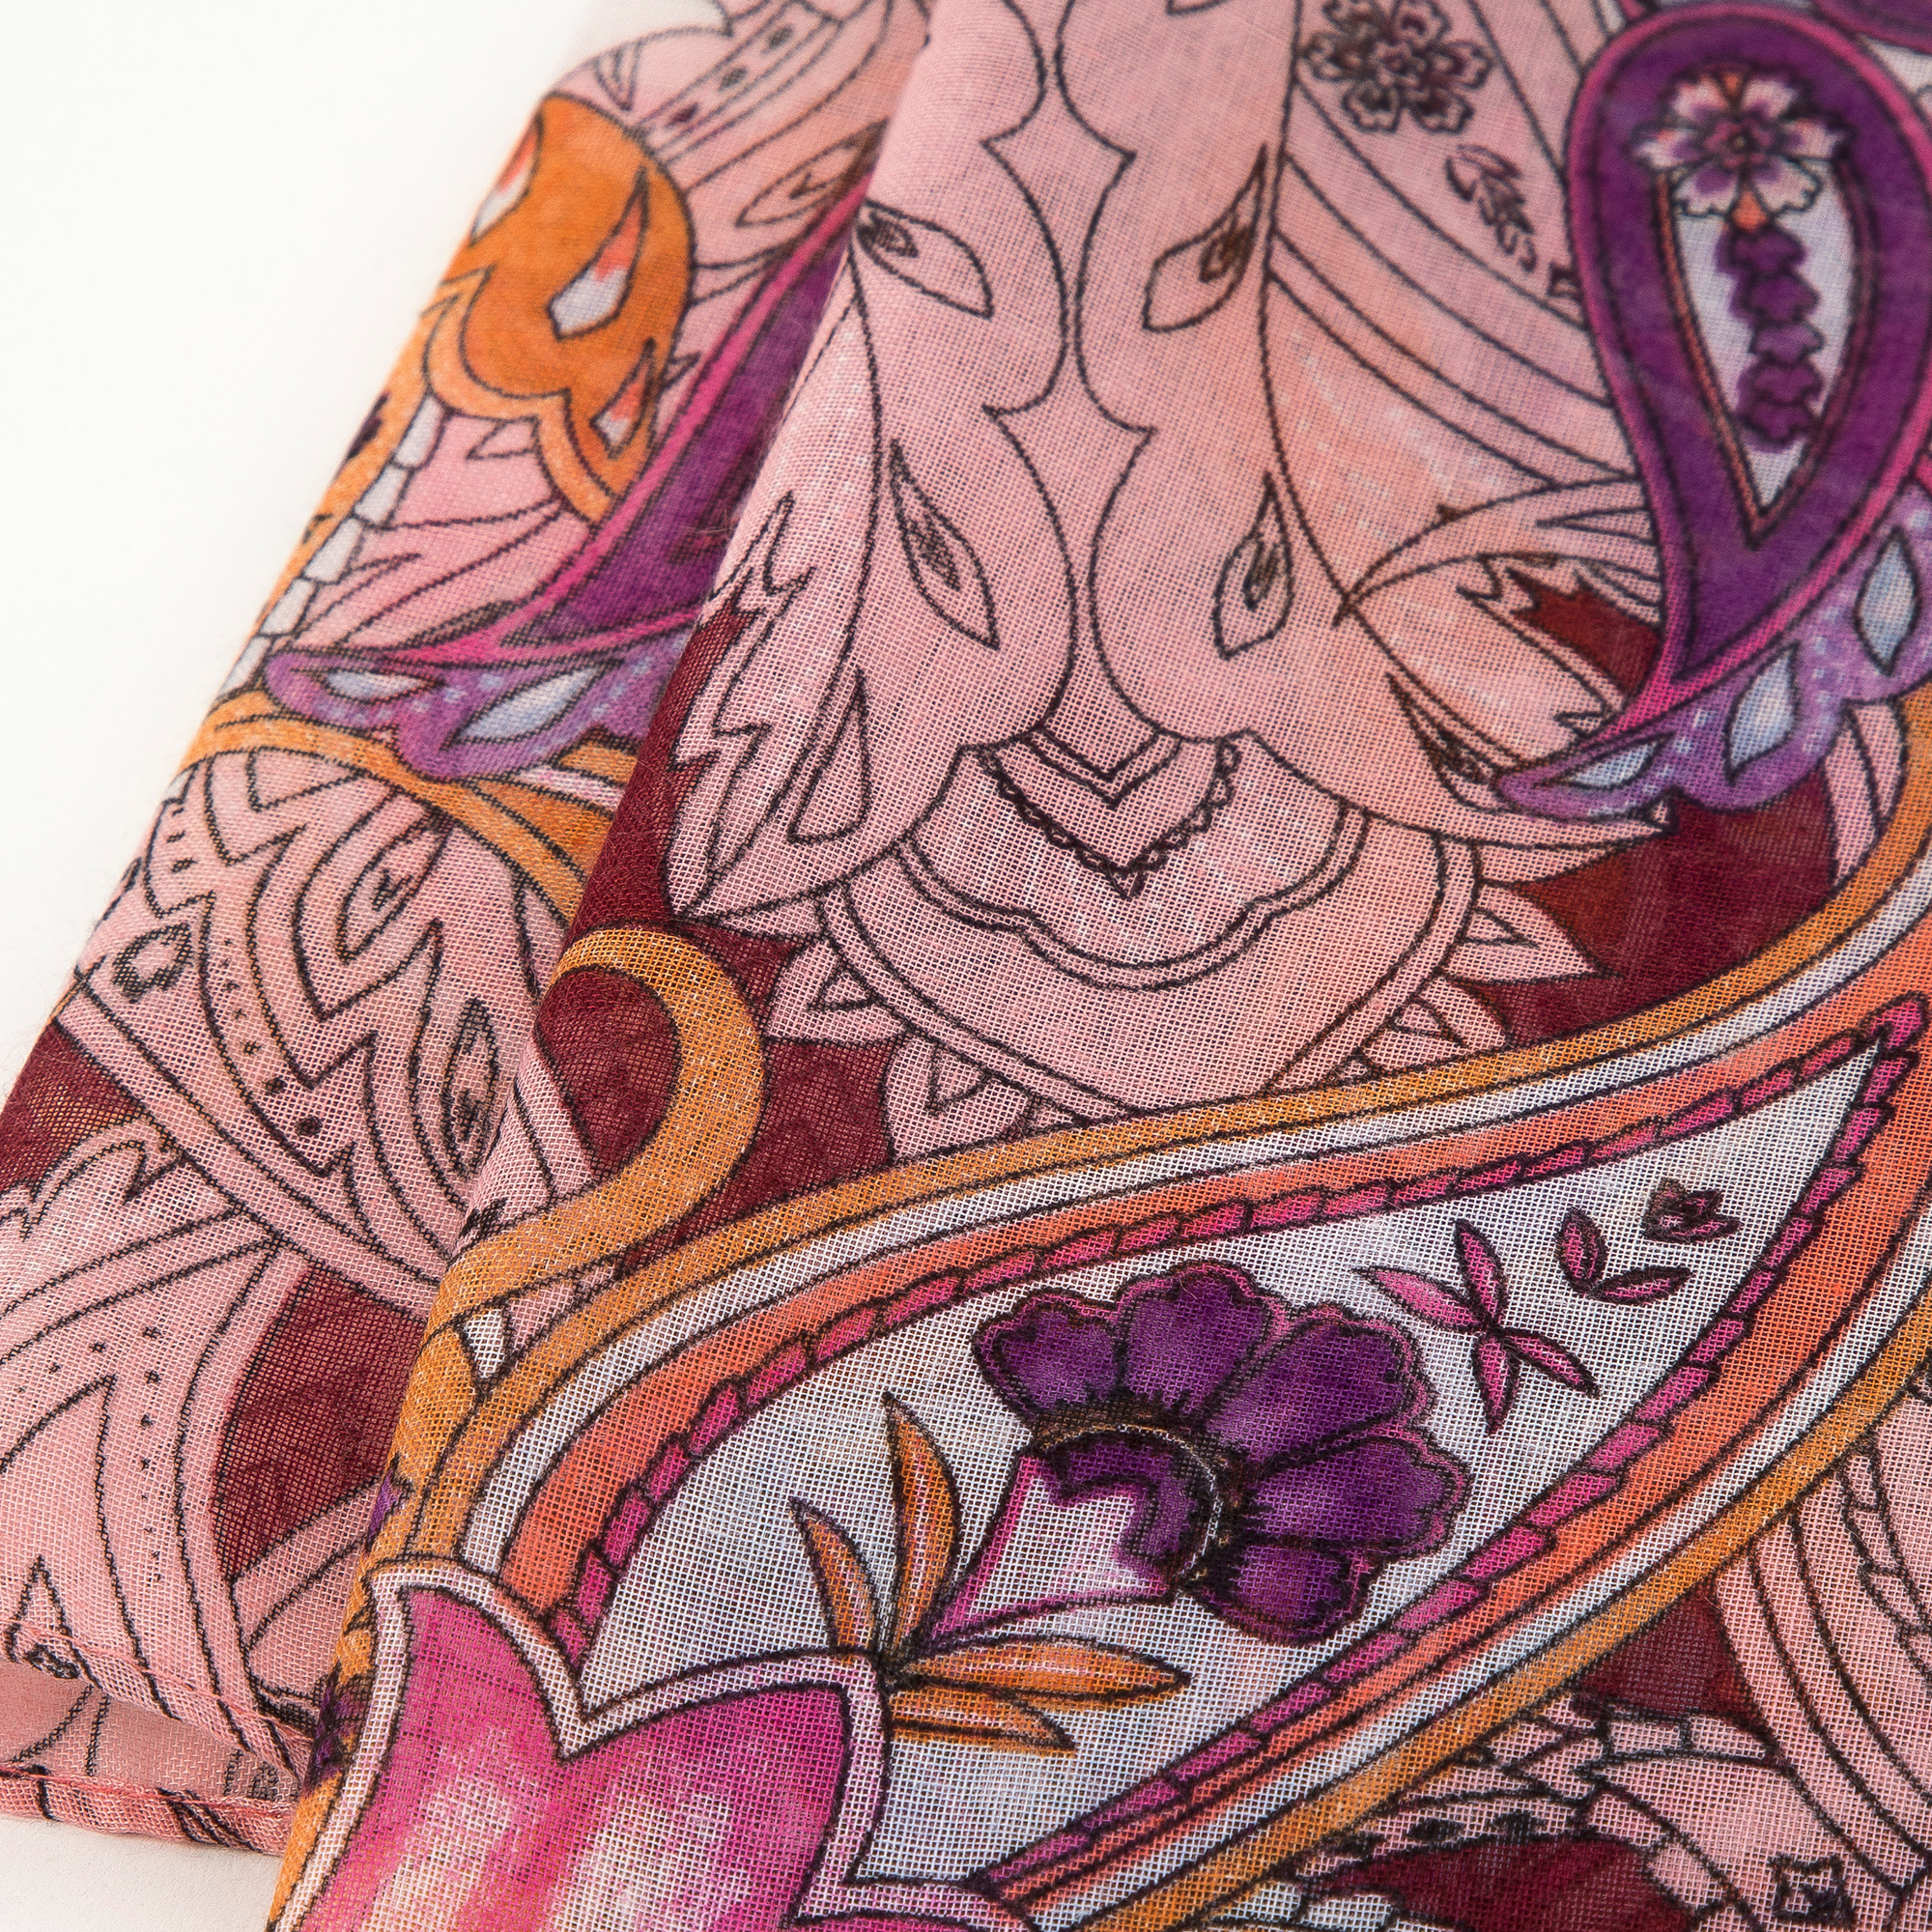 Dámsky jemný šál s orientálnymi vzormi, bordový a ružový 98-7D-X08-X5